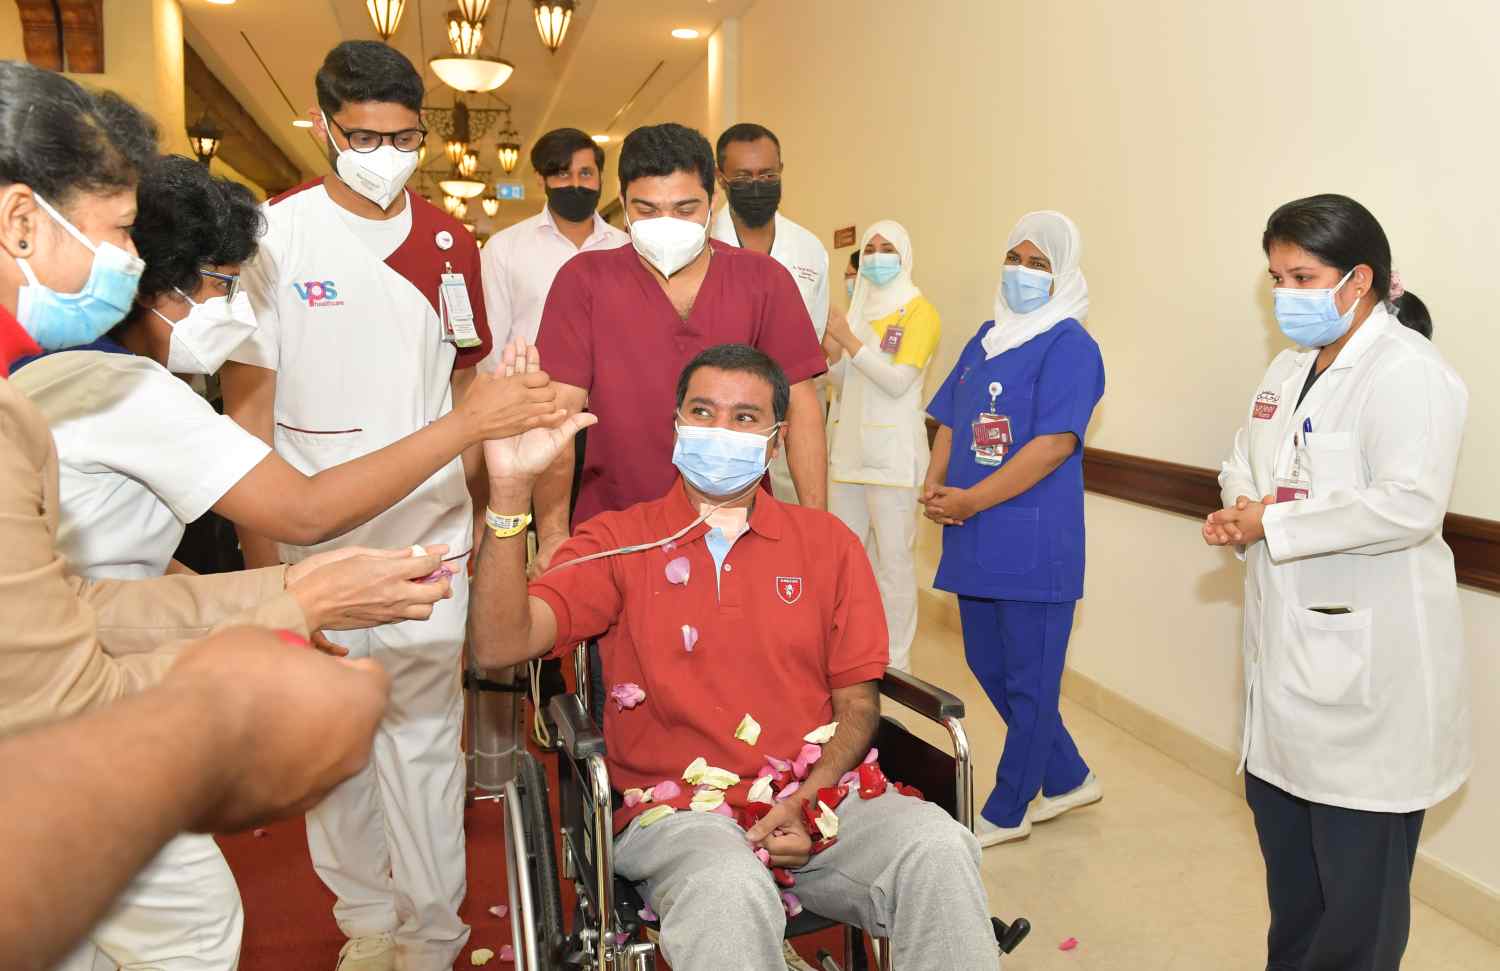 Frontline heroes-Arunkumar-welcoming-auditorium-recovery-Burjeel Hospital, Abu Dhabi